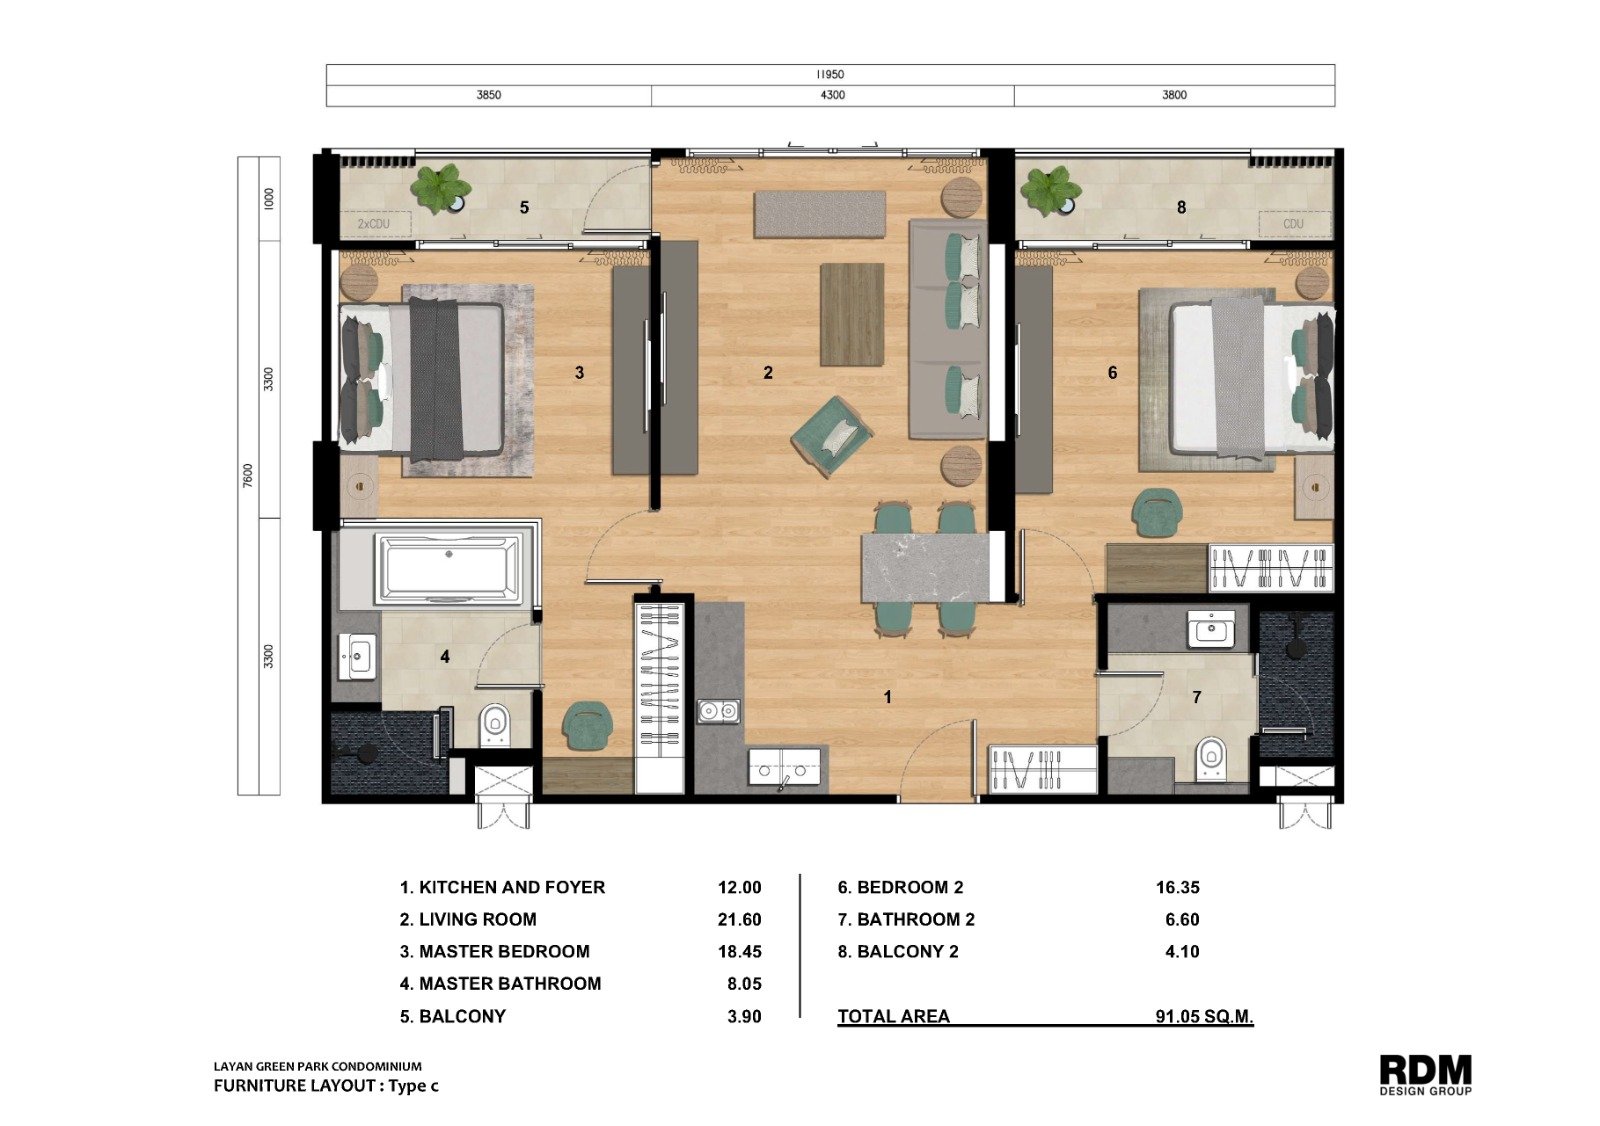 Floor Plan - 2-Bedroom Type C